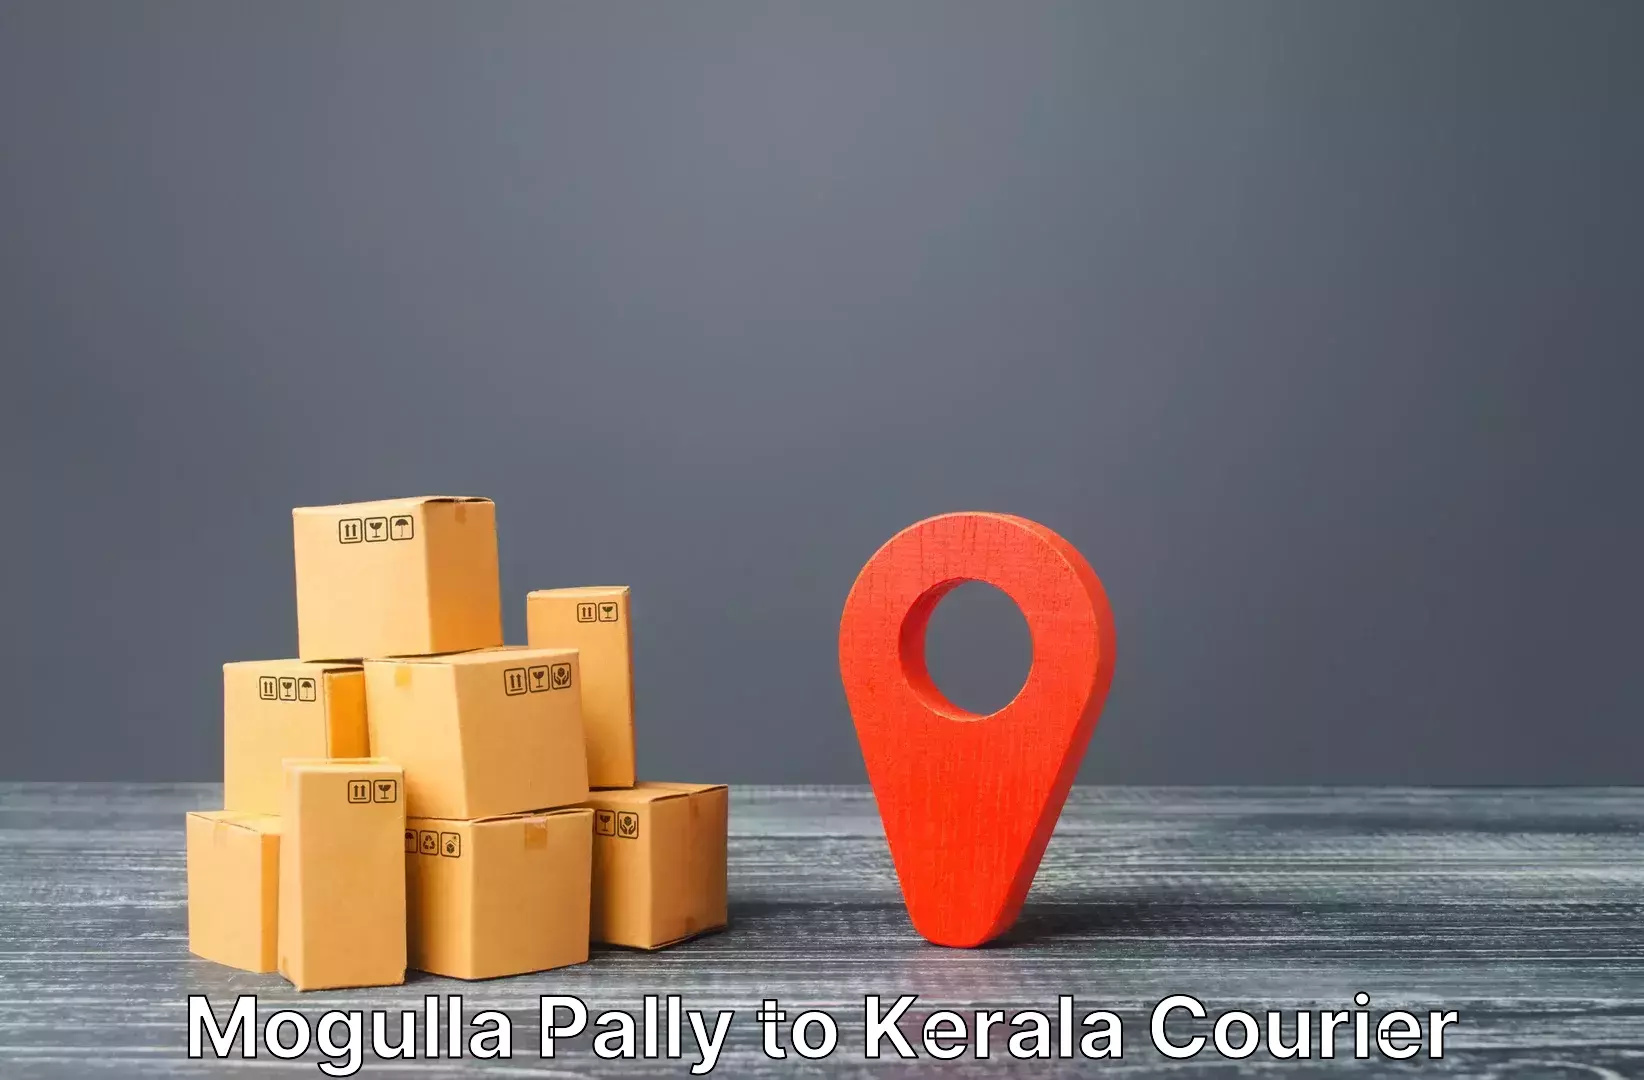 Luggage shipping solutions Mogulla Pally to Kuttiady